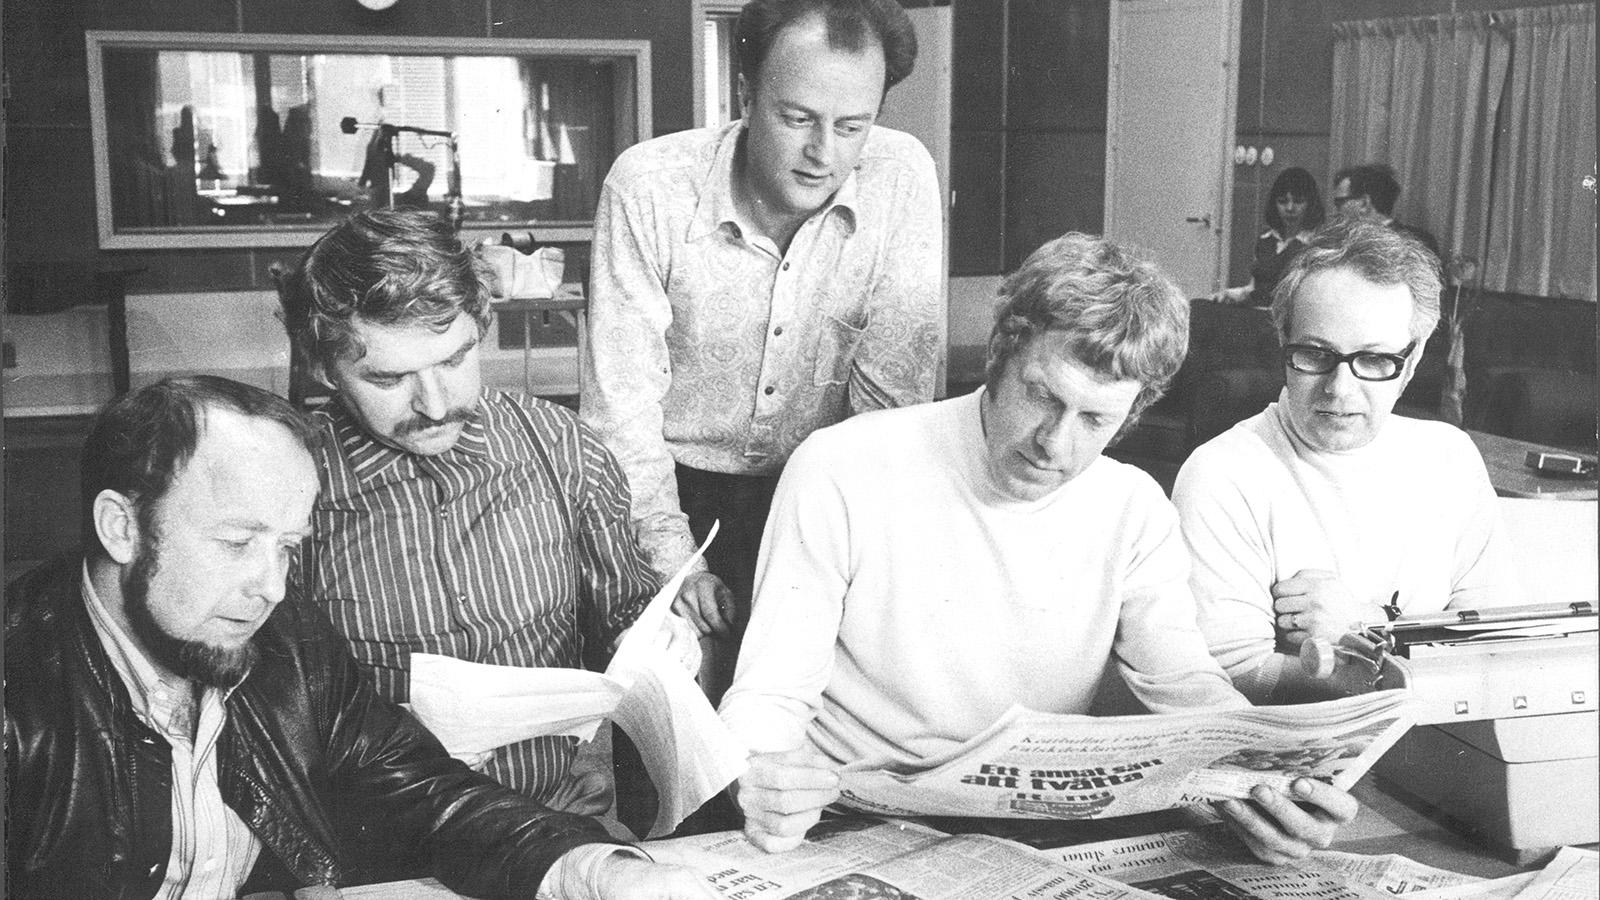 Radioprogrammet "Mosebacke Monarki" på stadsbesök i Malmö 1971. Från vänster Hatte Furuhagen, Hasse Alfredson, Thord Carlsson, Tage Danielsson och Carl-Uno Sjöblom, som var programledare.